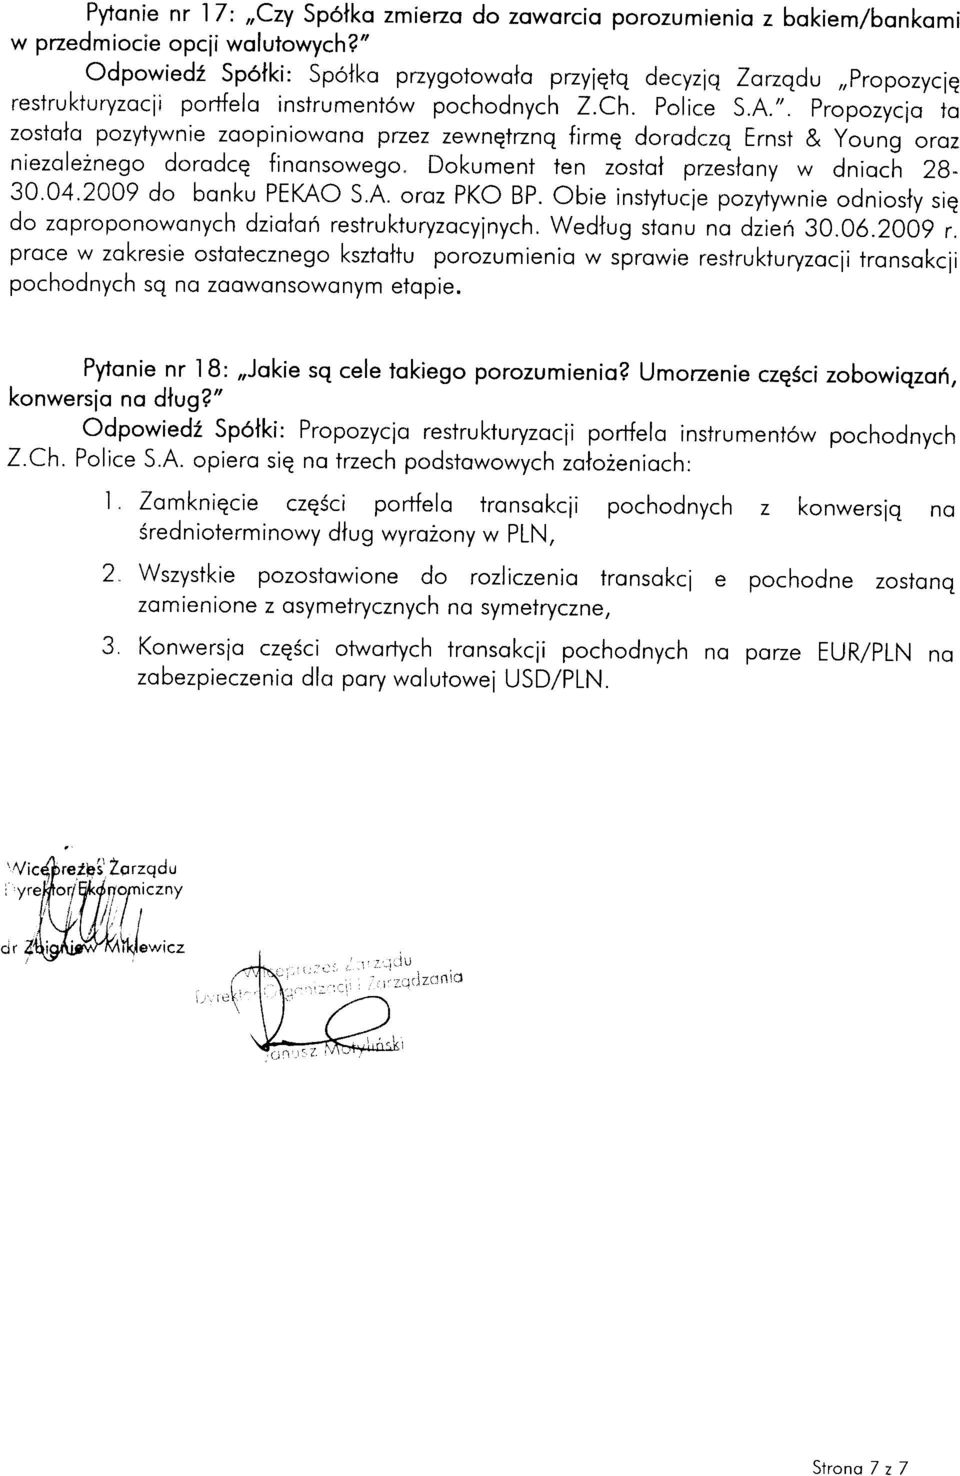 Dokument ien zostol przeslony w dnioch 28-30.04.2009 do bonku PEKAO S.A. oroz PKO BP. Obie insfytucie pozytywnie odniosly siq do zoproponowonych dziolori restrukturyzocyinych.